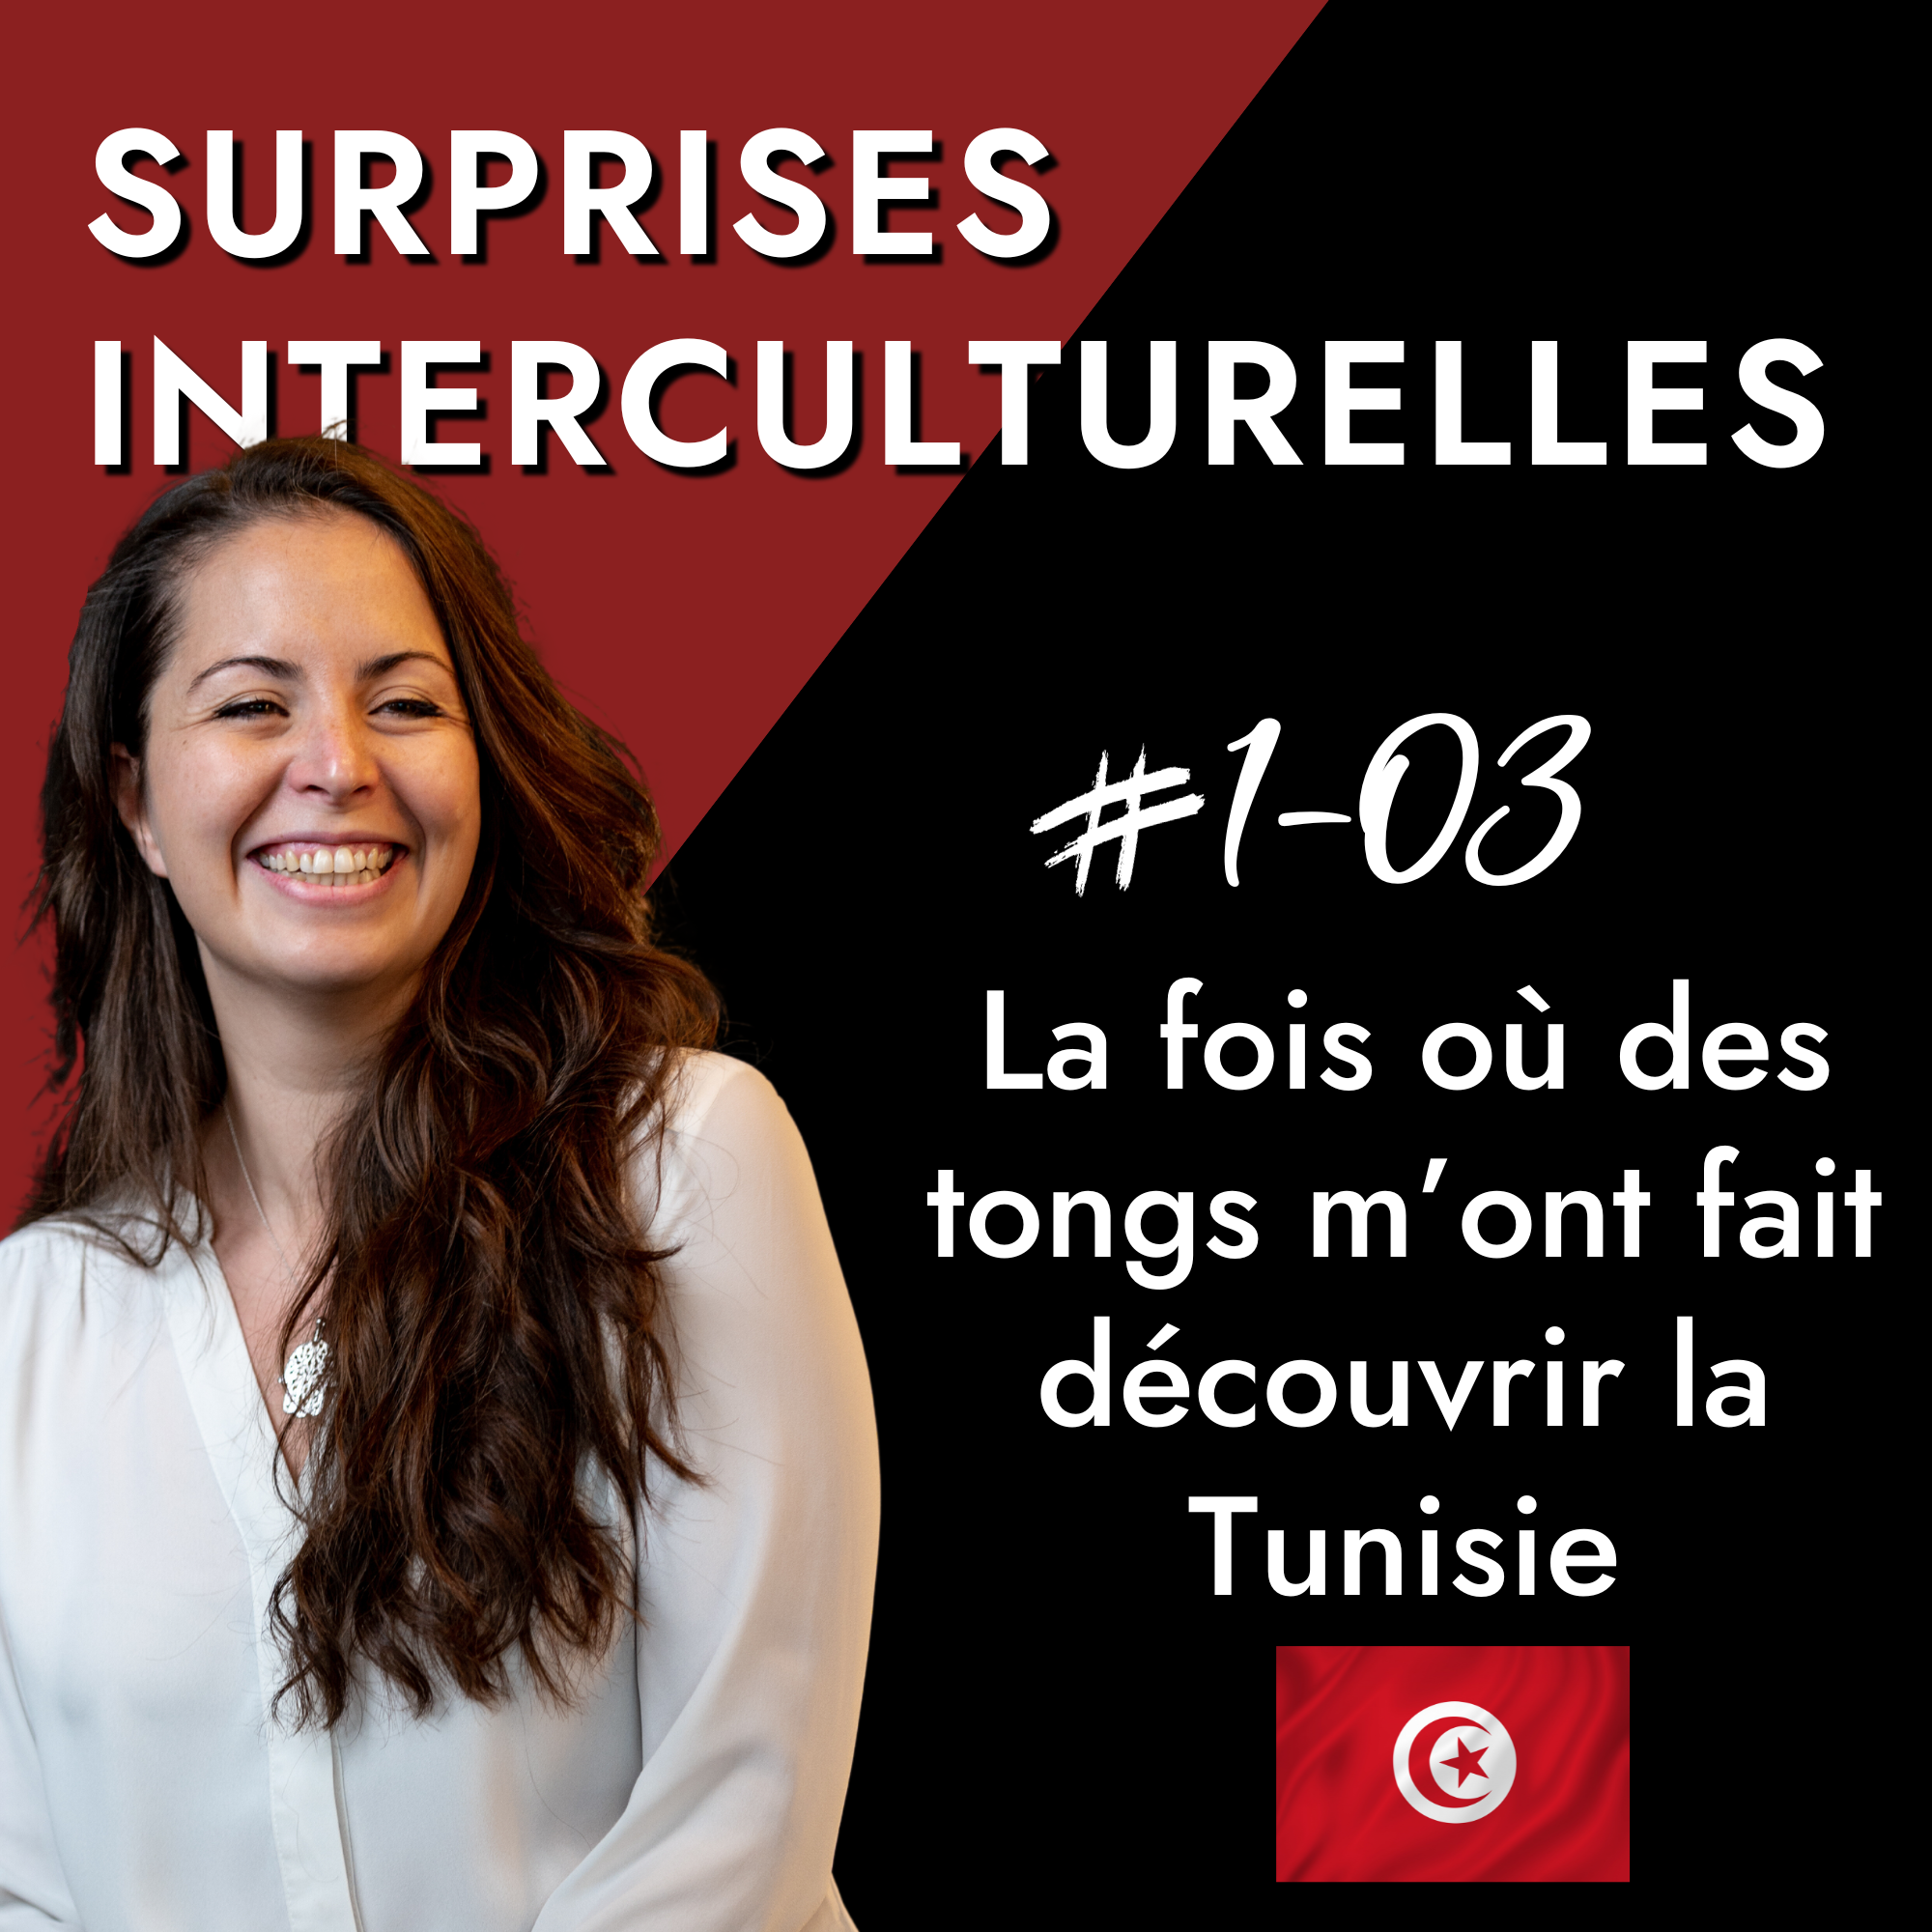 Surprises Interculturelles - La Tunisie et ses superstititons